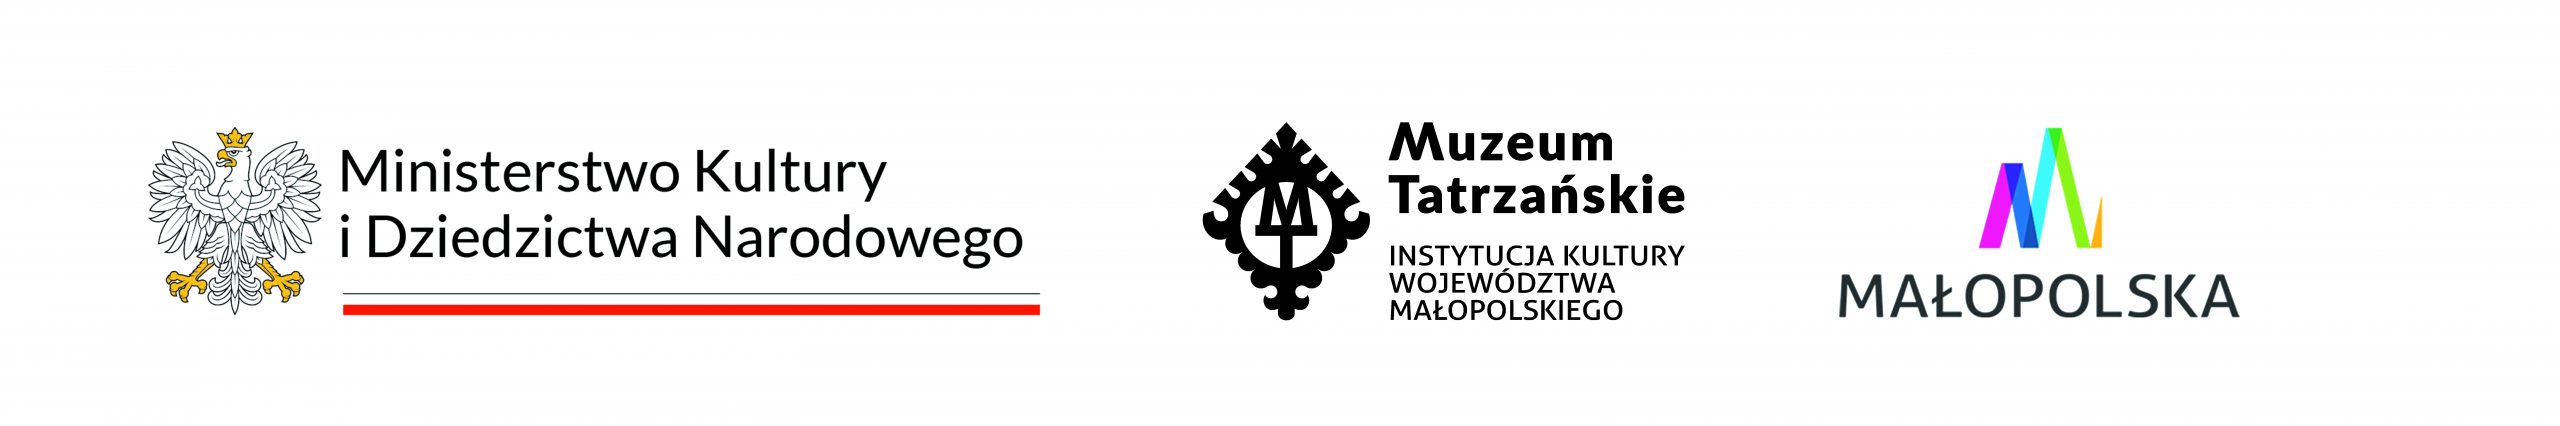 Baner loga: Ministerstwo Kultury i Dziedzictwa Narodowego, Muzeum Tatrzańskie, Instytucja Kultury Województwa Małopolskiego, Małopolska